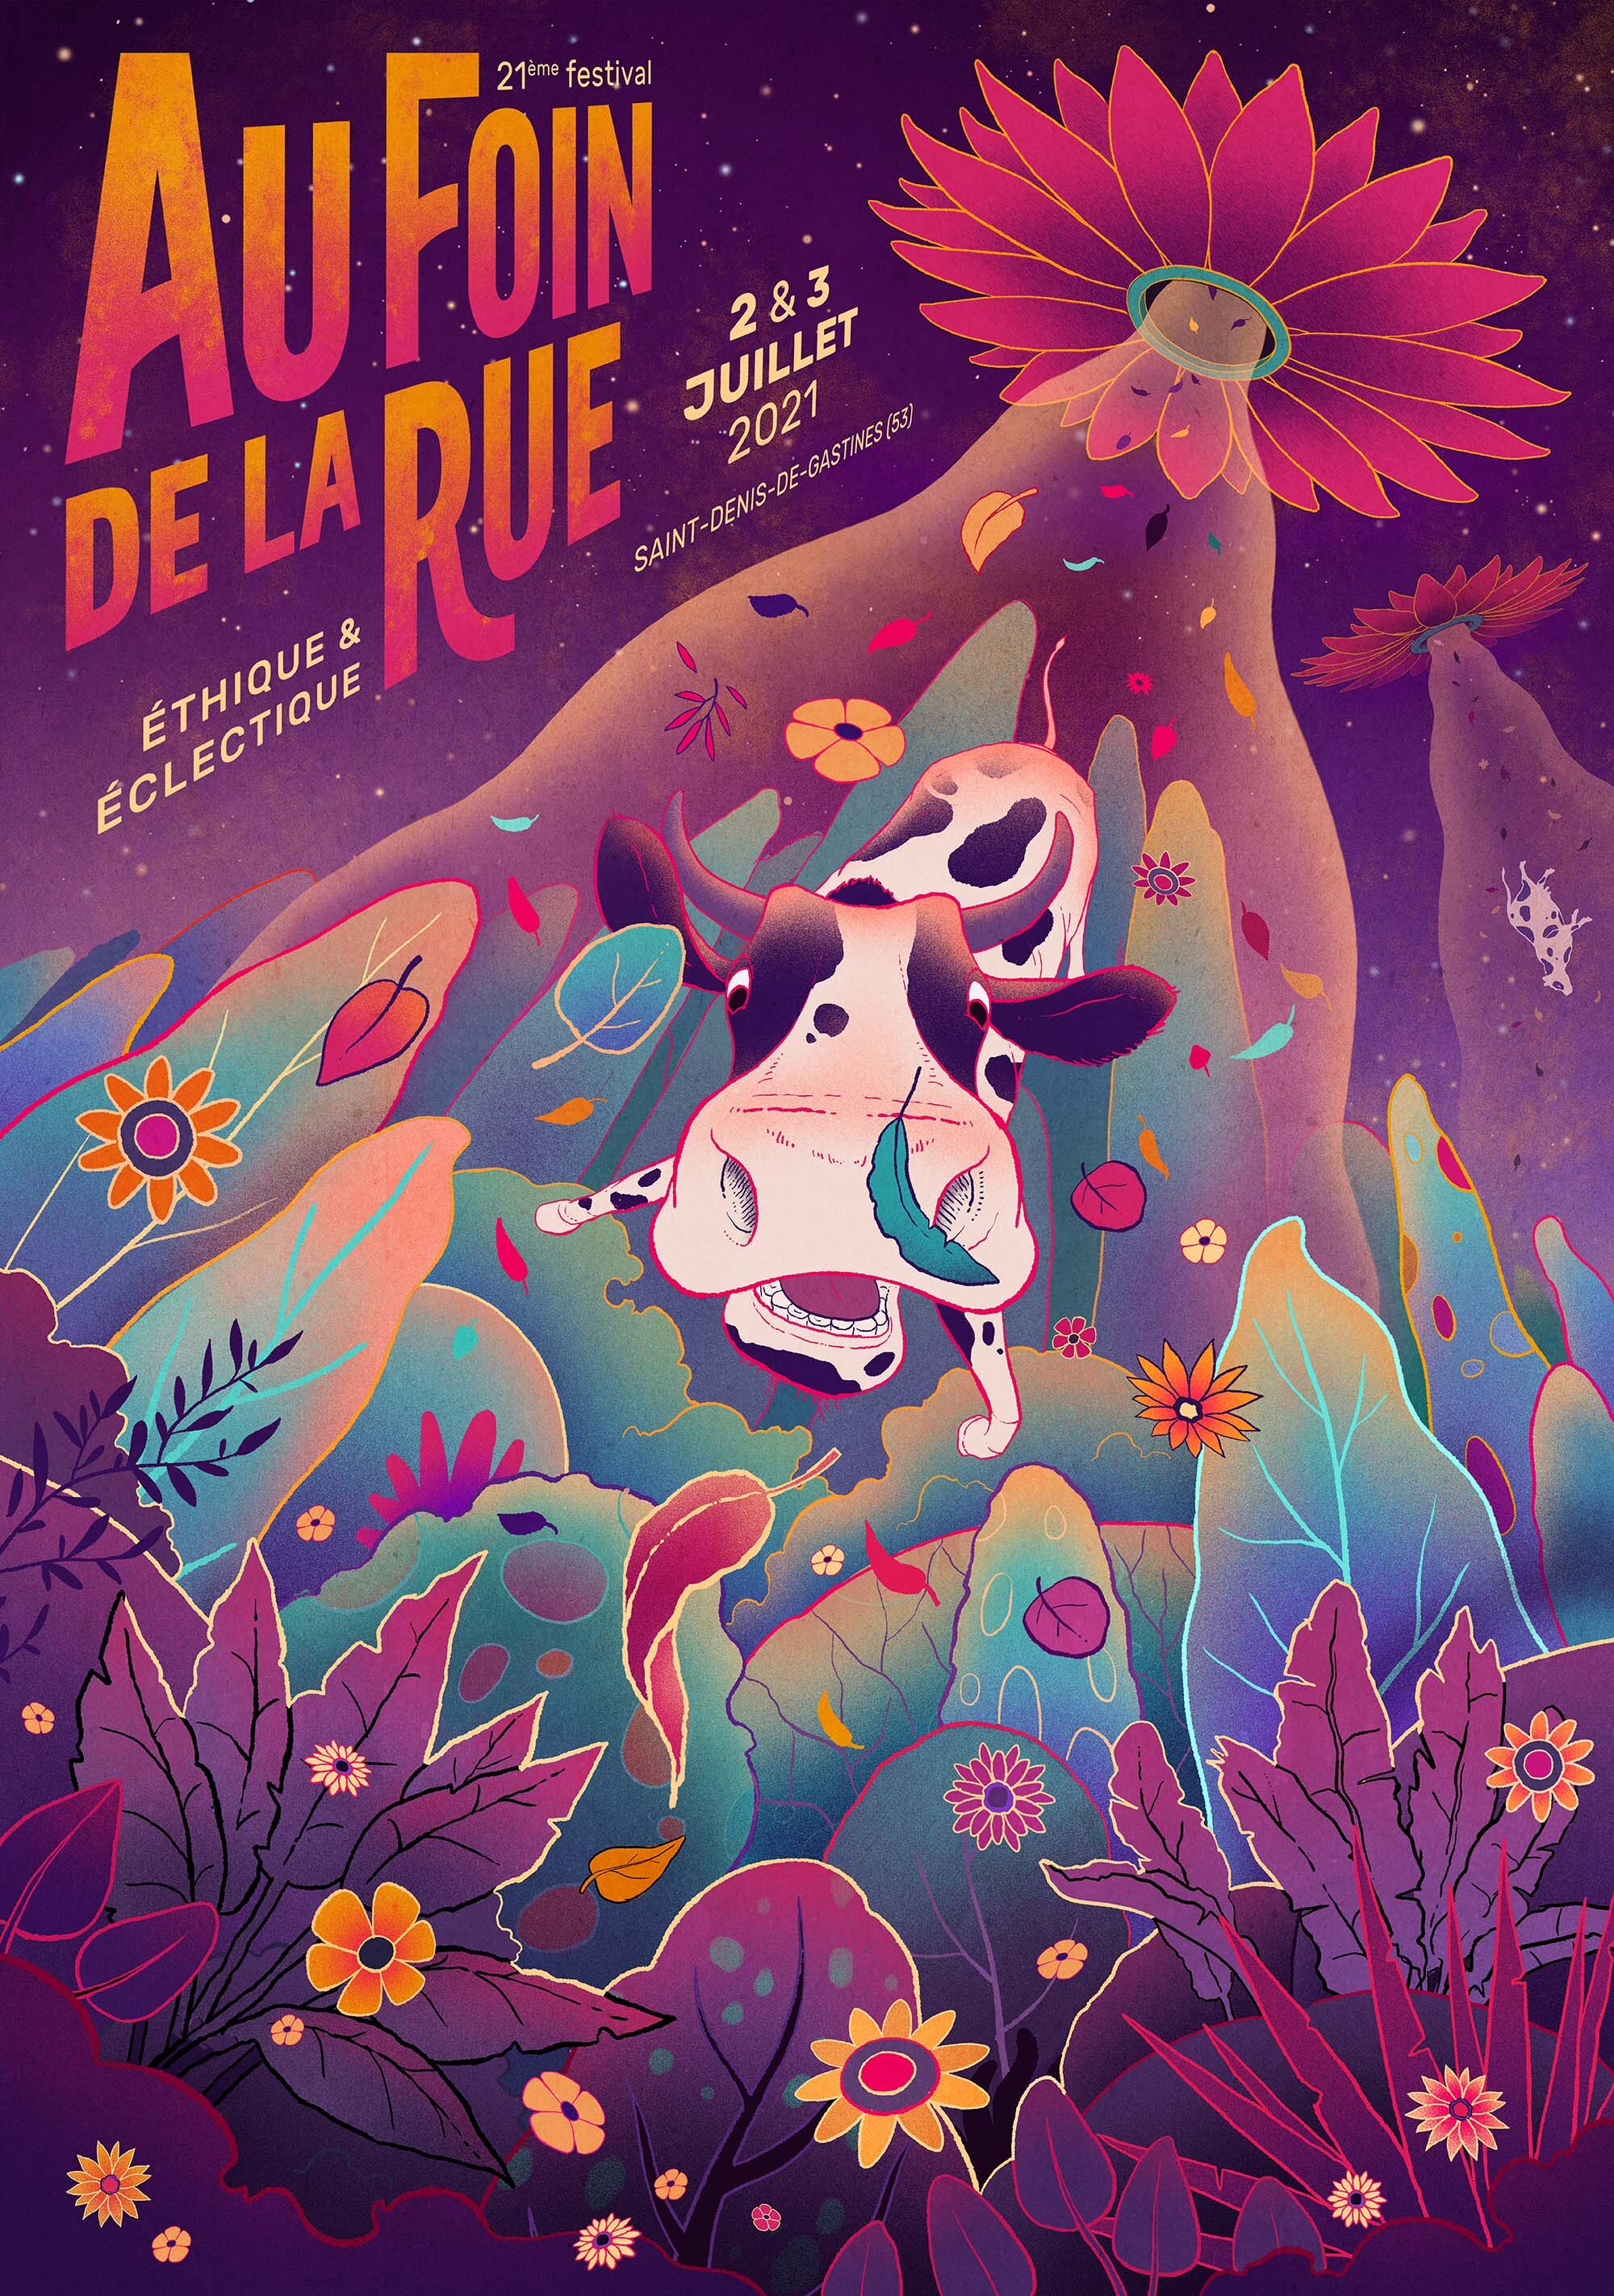 antoine-dore-aufoindelarue-Festival-poster-2021.jpg